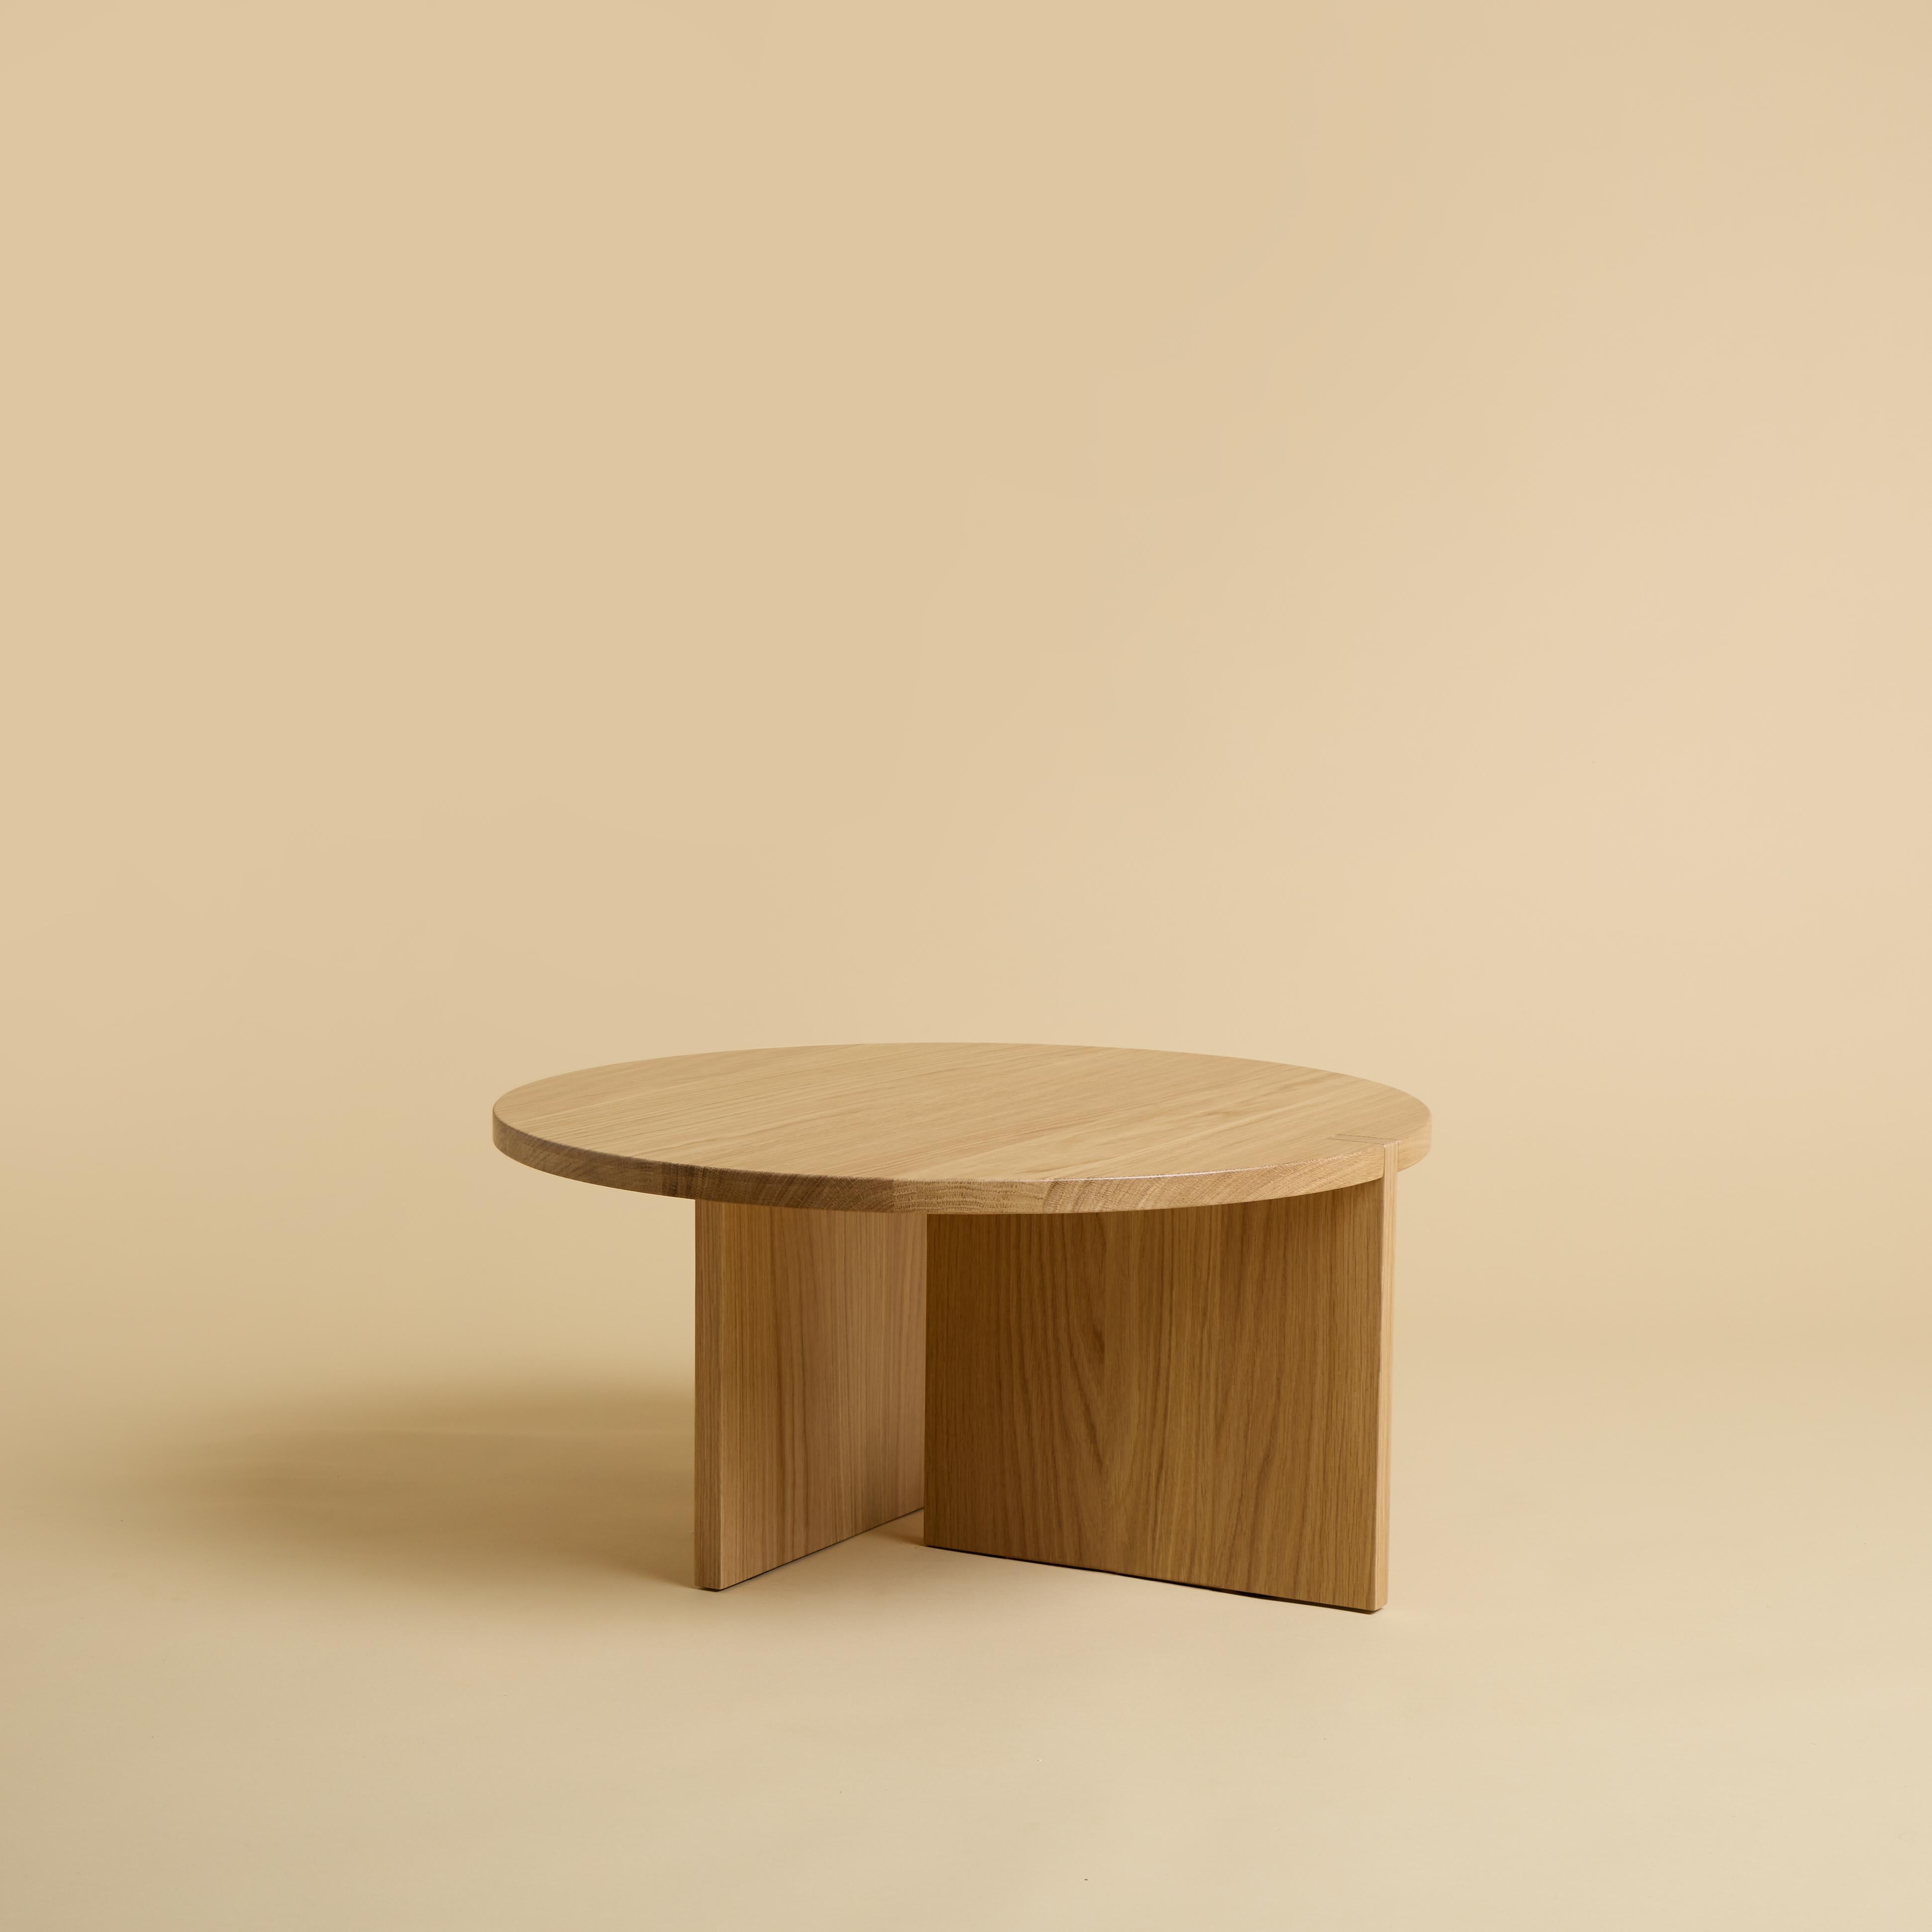 La table basse Minami est entièrement fabriquée en bois de chêne massif. Le plateau est circulaire et a un diamètre de 60 cm, les pieds sont constitués de deux planches de bois massif collées dont une partie est incrustée sur le plateau.
La pièce